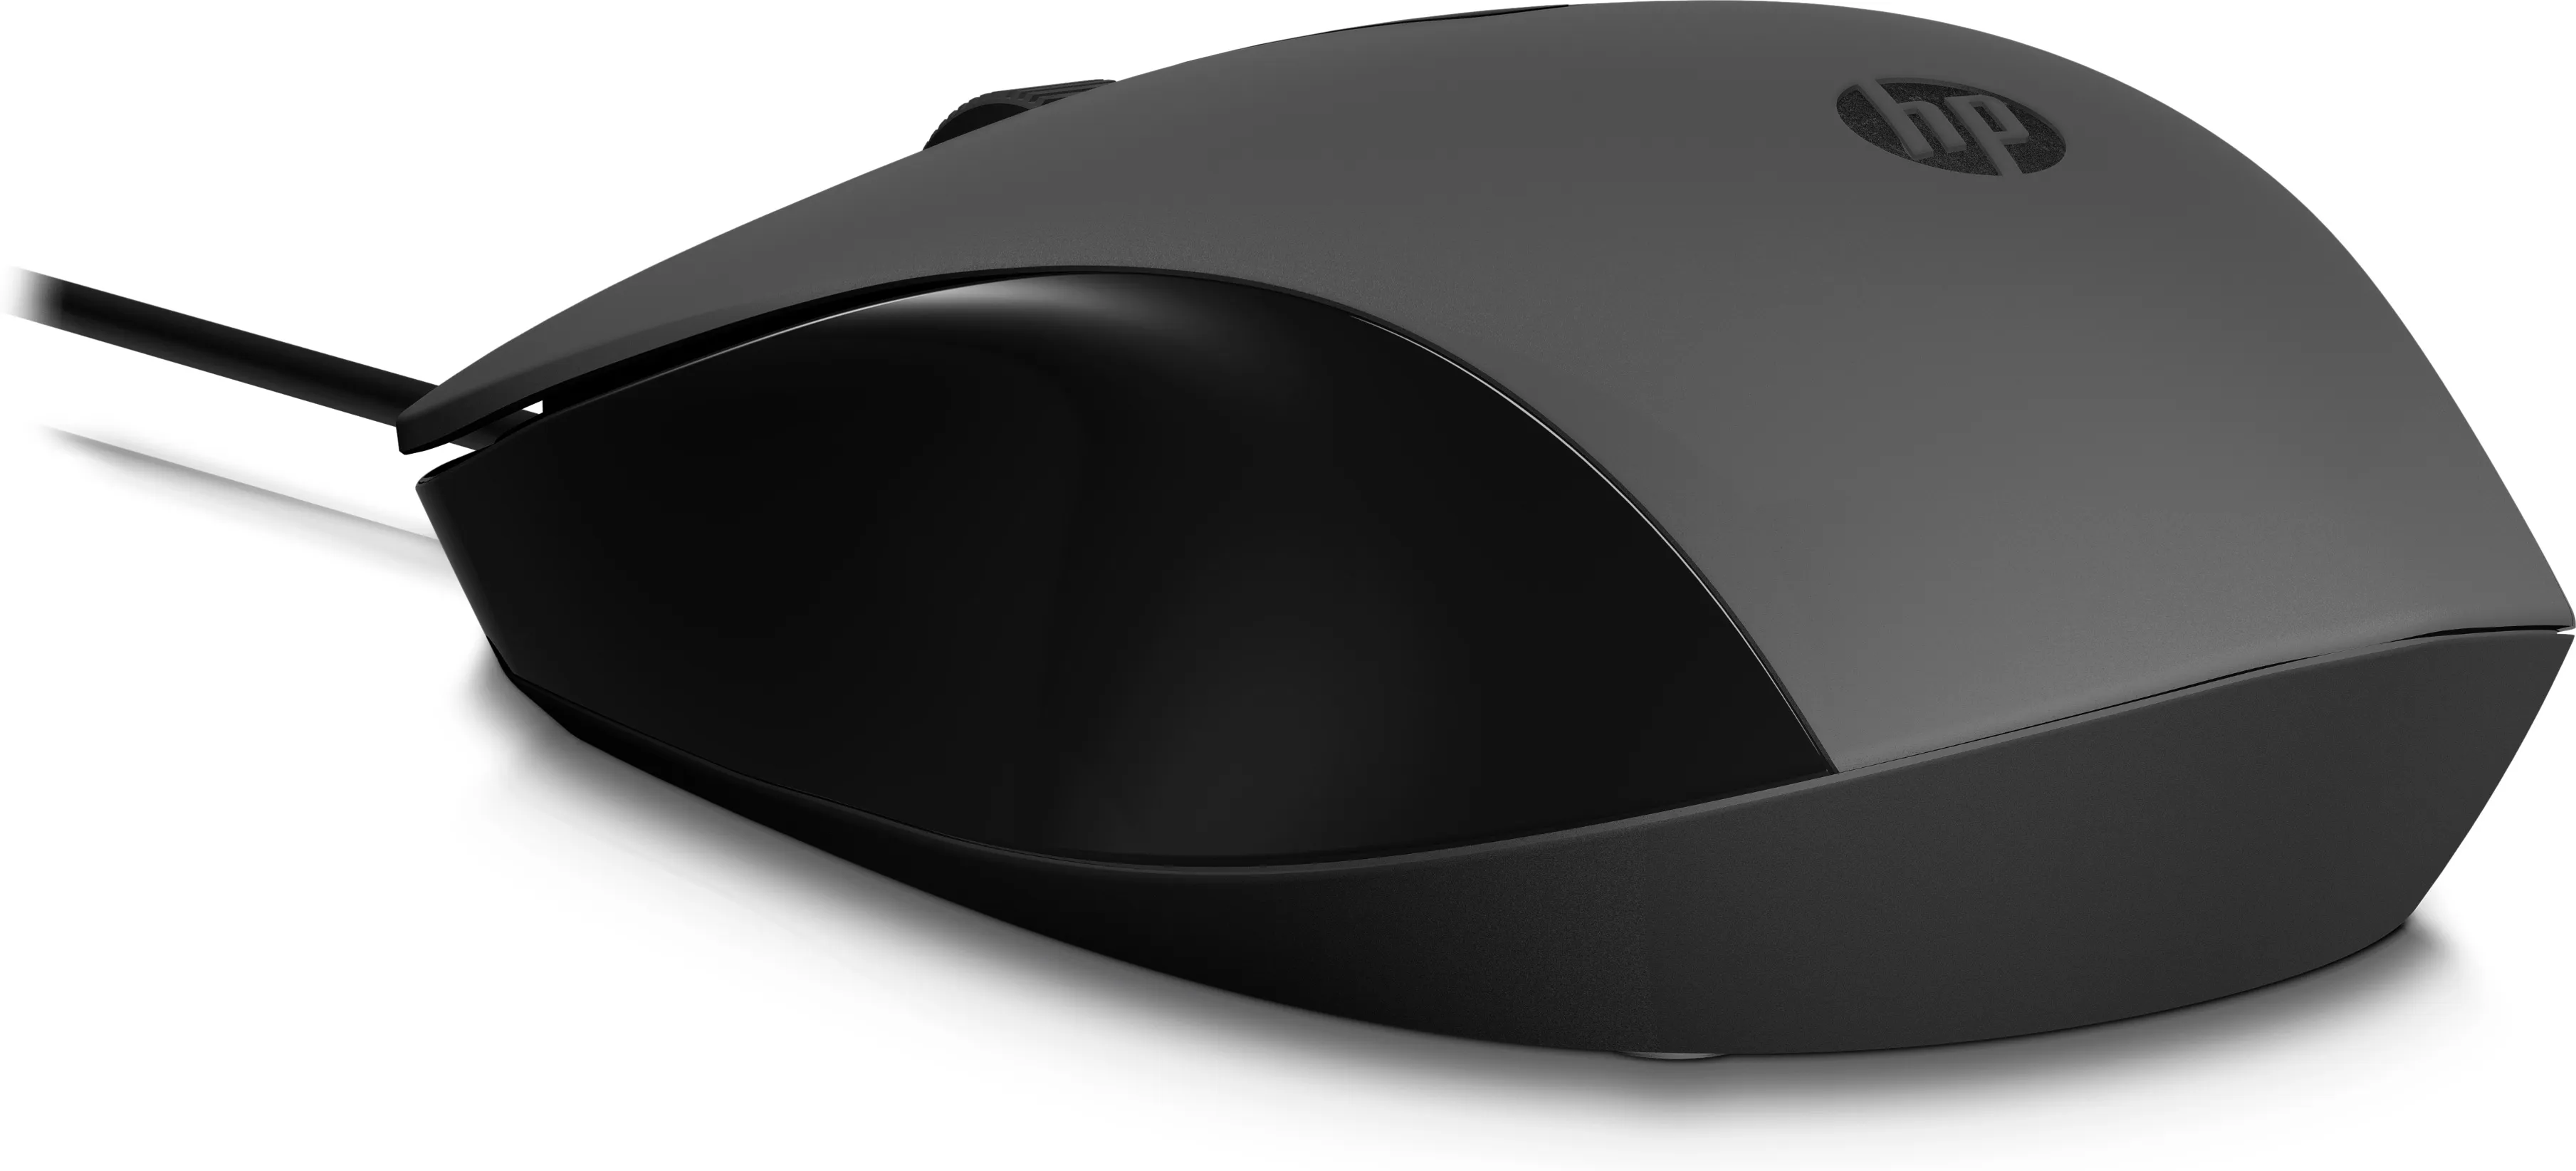 Vente HP 150 Wired Mouse HP au meilleur prix - visuel 10